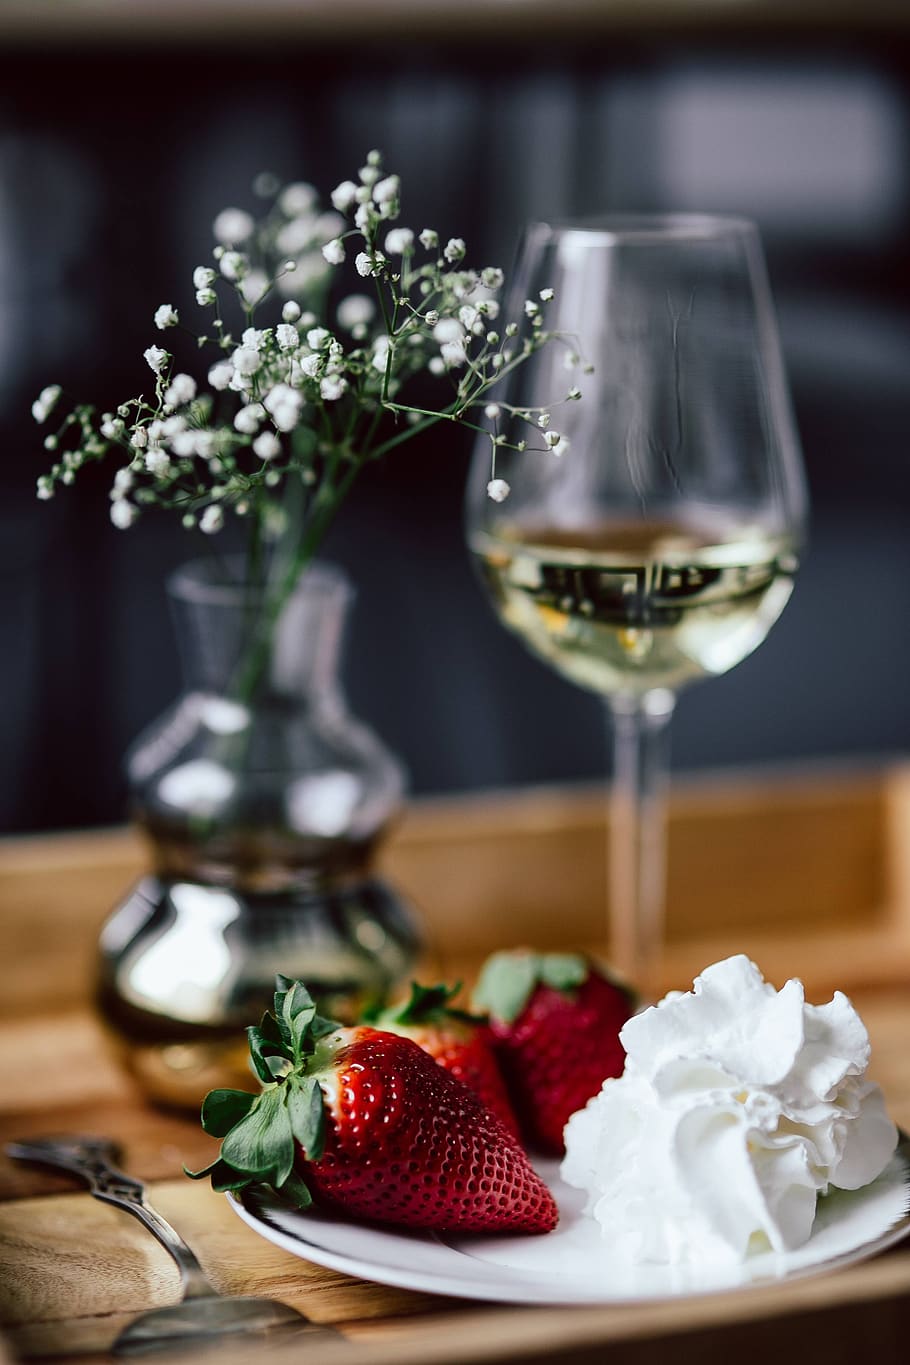 sweet, glass, wine, tray, dessert, room service, cream, whipped cream, white wine, Strawberries